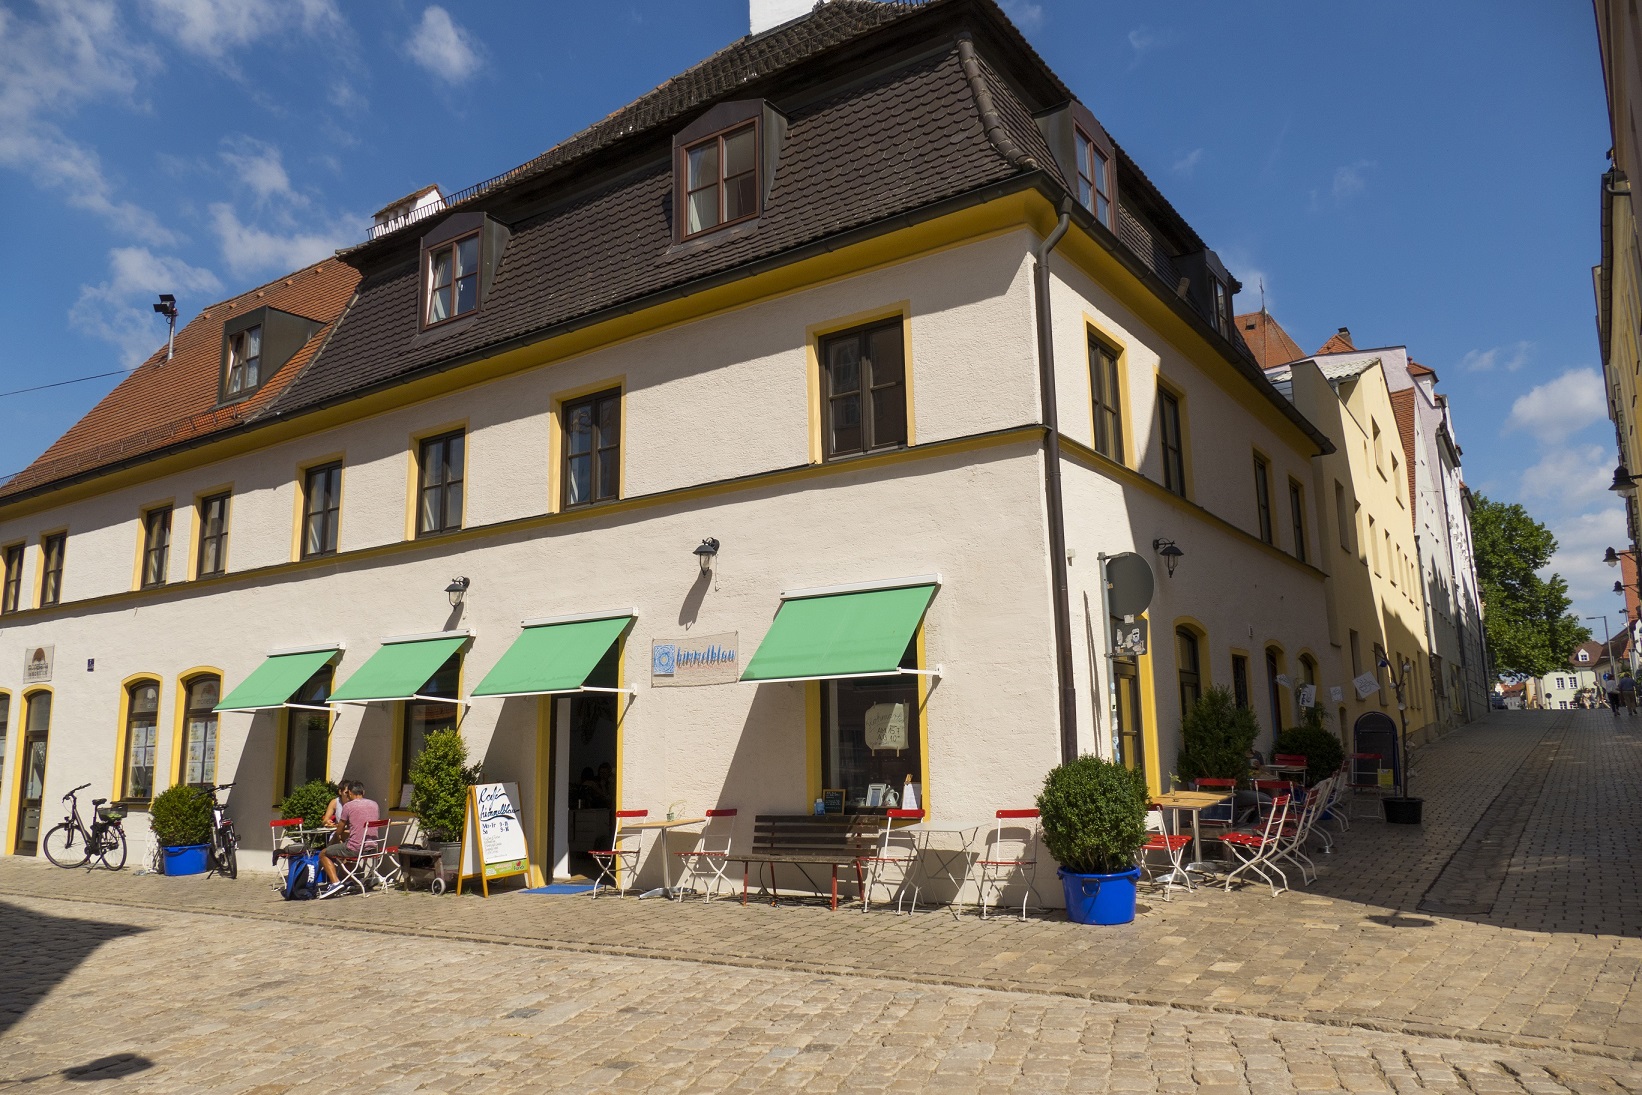 Café Himmelblau